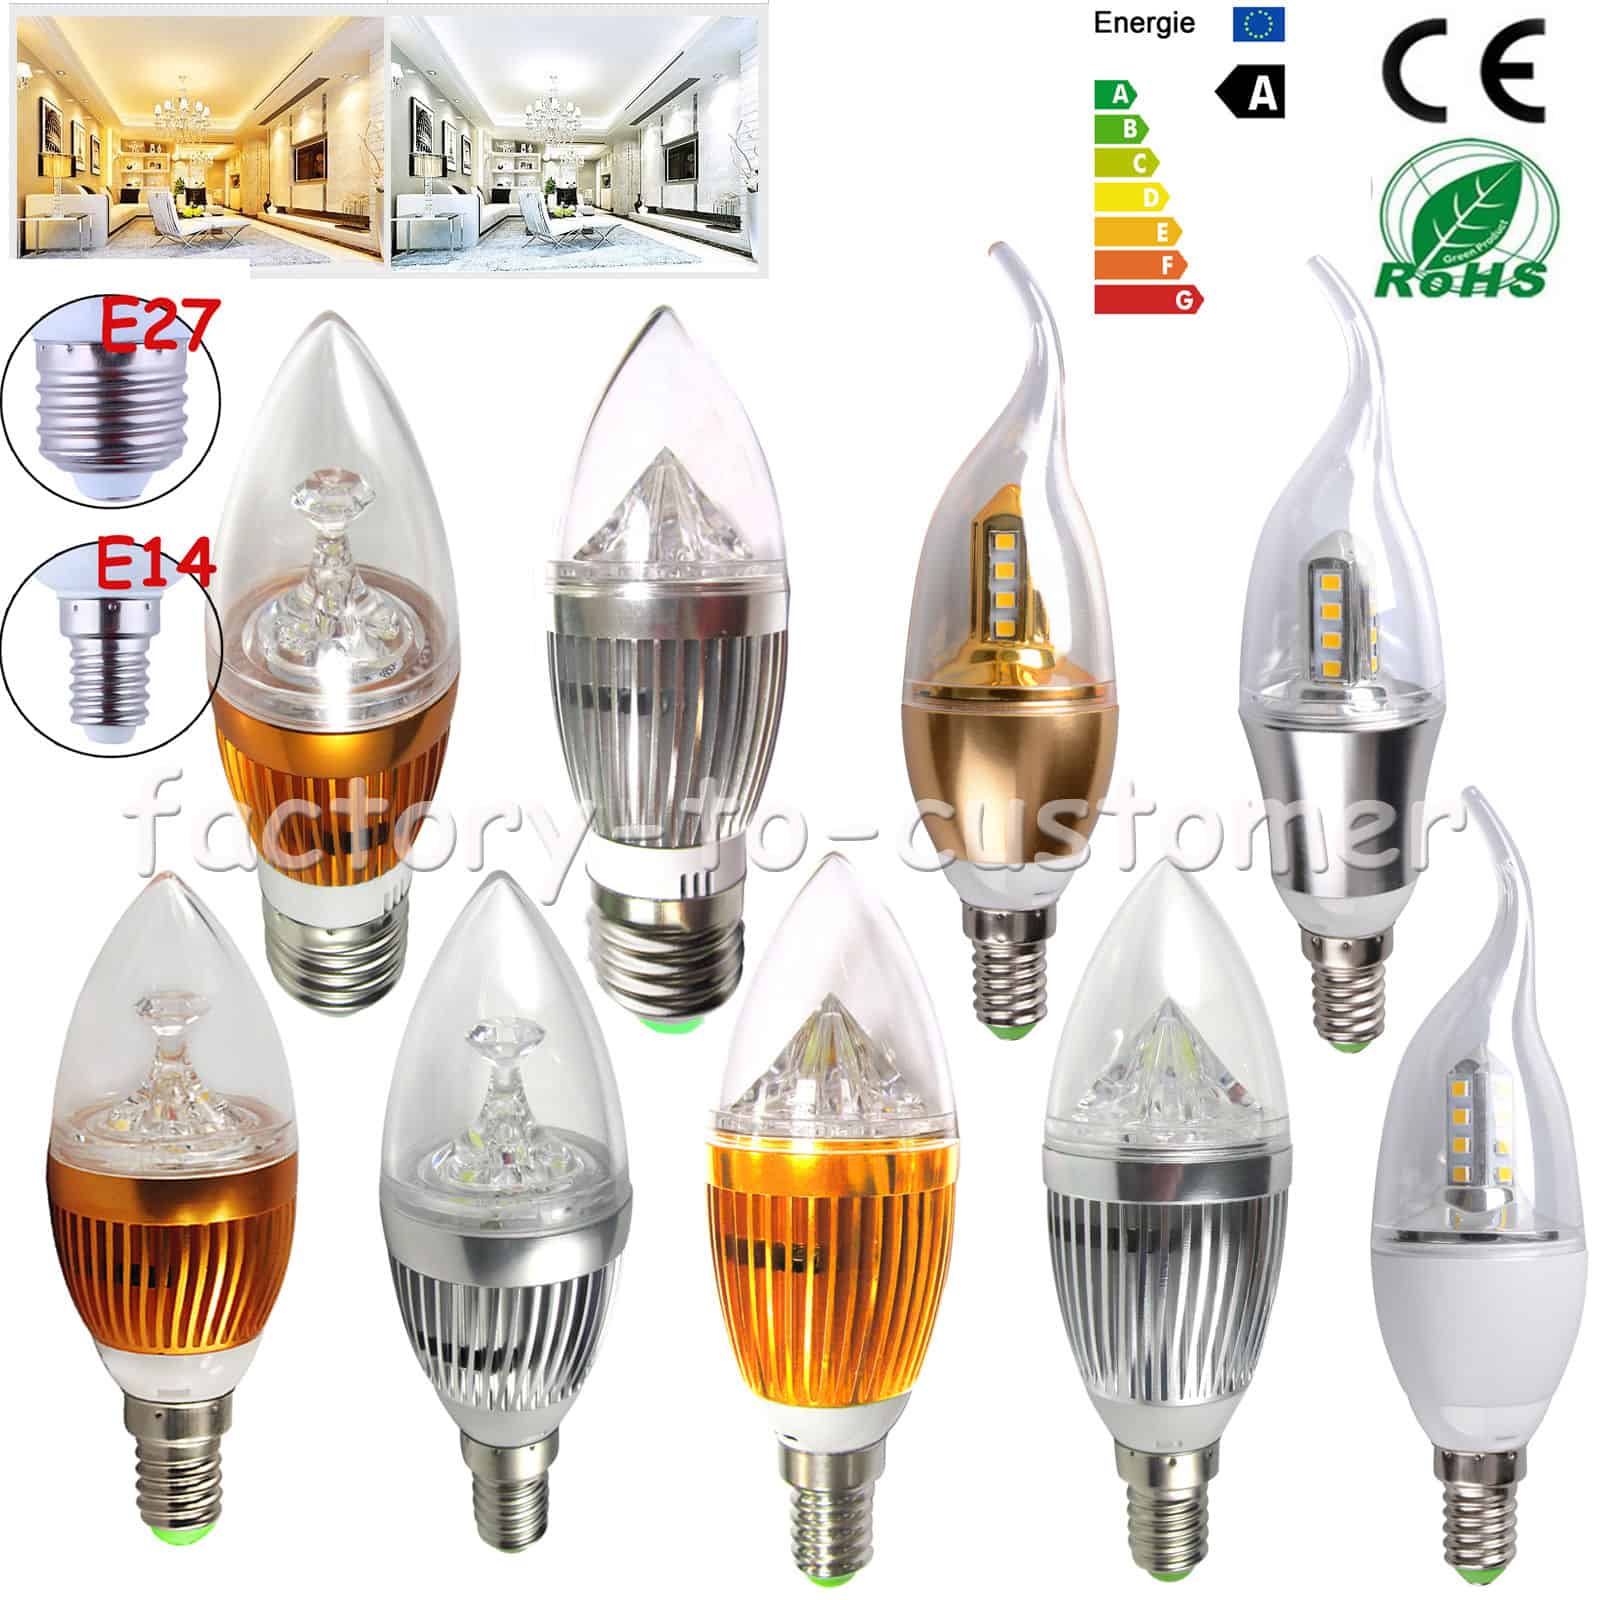 Kerzenlampen mit LED / SMD-Technik günstig aus China! E14 oder E27 Leuchtmittel mit 6, 9 Watt oder 12 Watt für kleines Geld!